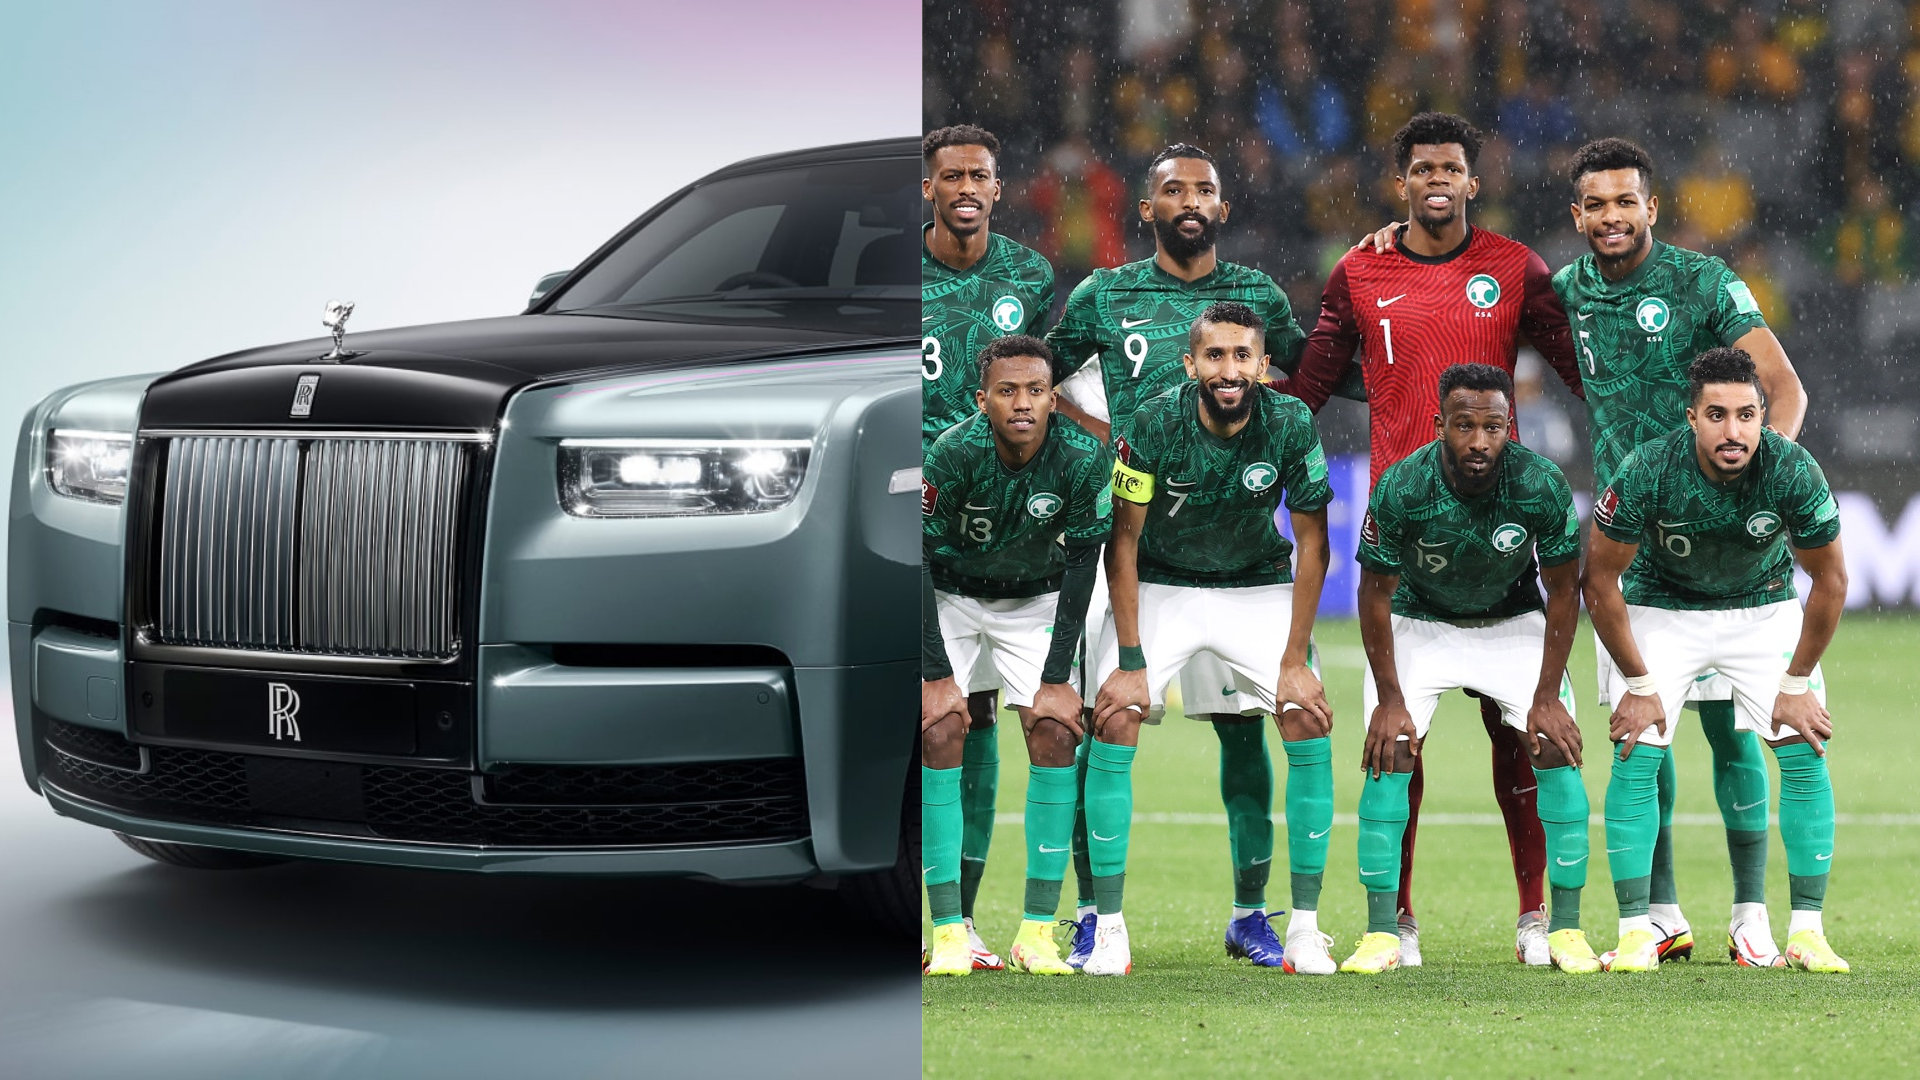 Equipo de Arabia Saudita recibirán un Rolls Royce cada uno